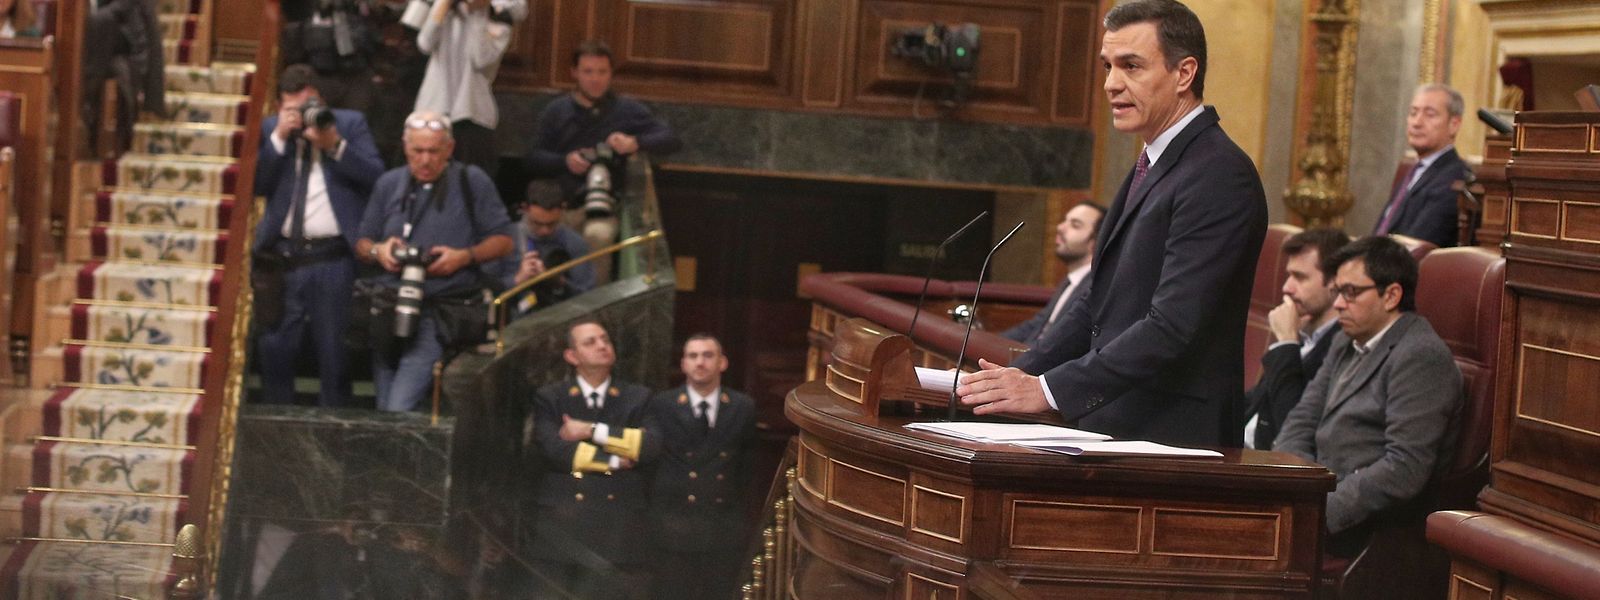 Pedro Sánchez, der geschäftsführende Ministerpräsident von Spanien, hält auf der Tribüne seine Rede während der ersten Sitzung des Abgeordnetenkongresses. Im spanischen Parlament hat am Samstag die Debatte über die Wahl des geschäftsführenden Ministerpräsidenten Sánchez zum Regierungschef begonnen.